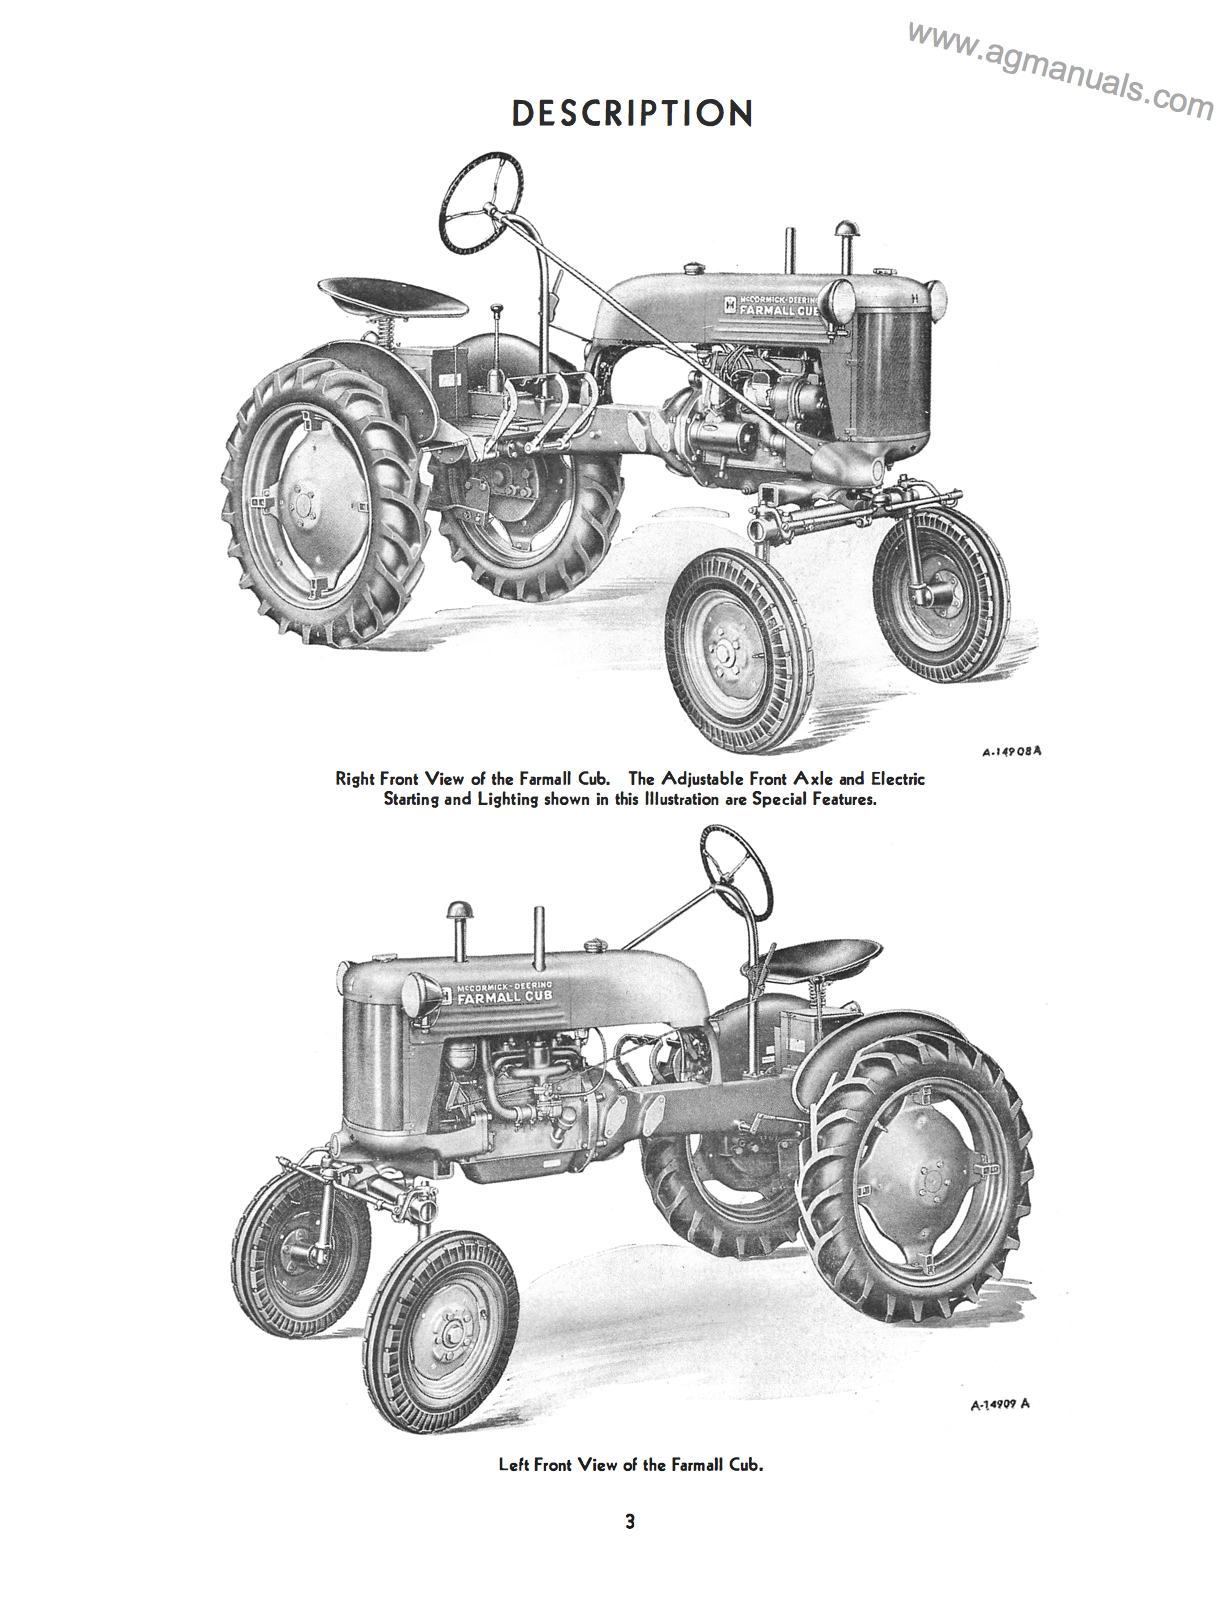 McCormick Farmall and International Cub Tractors - Owner's Manual - Ag Manuals - A Provider of Digital Farm Manuals - 2